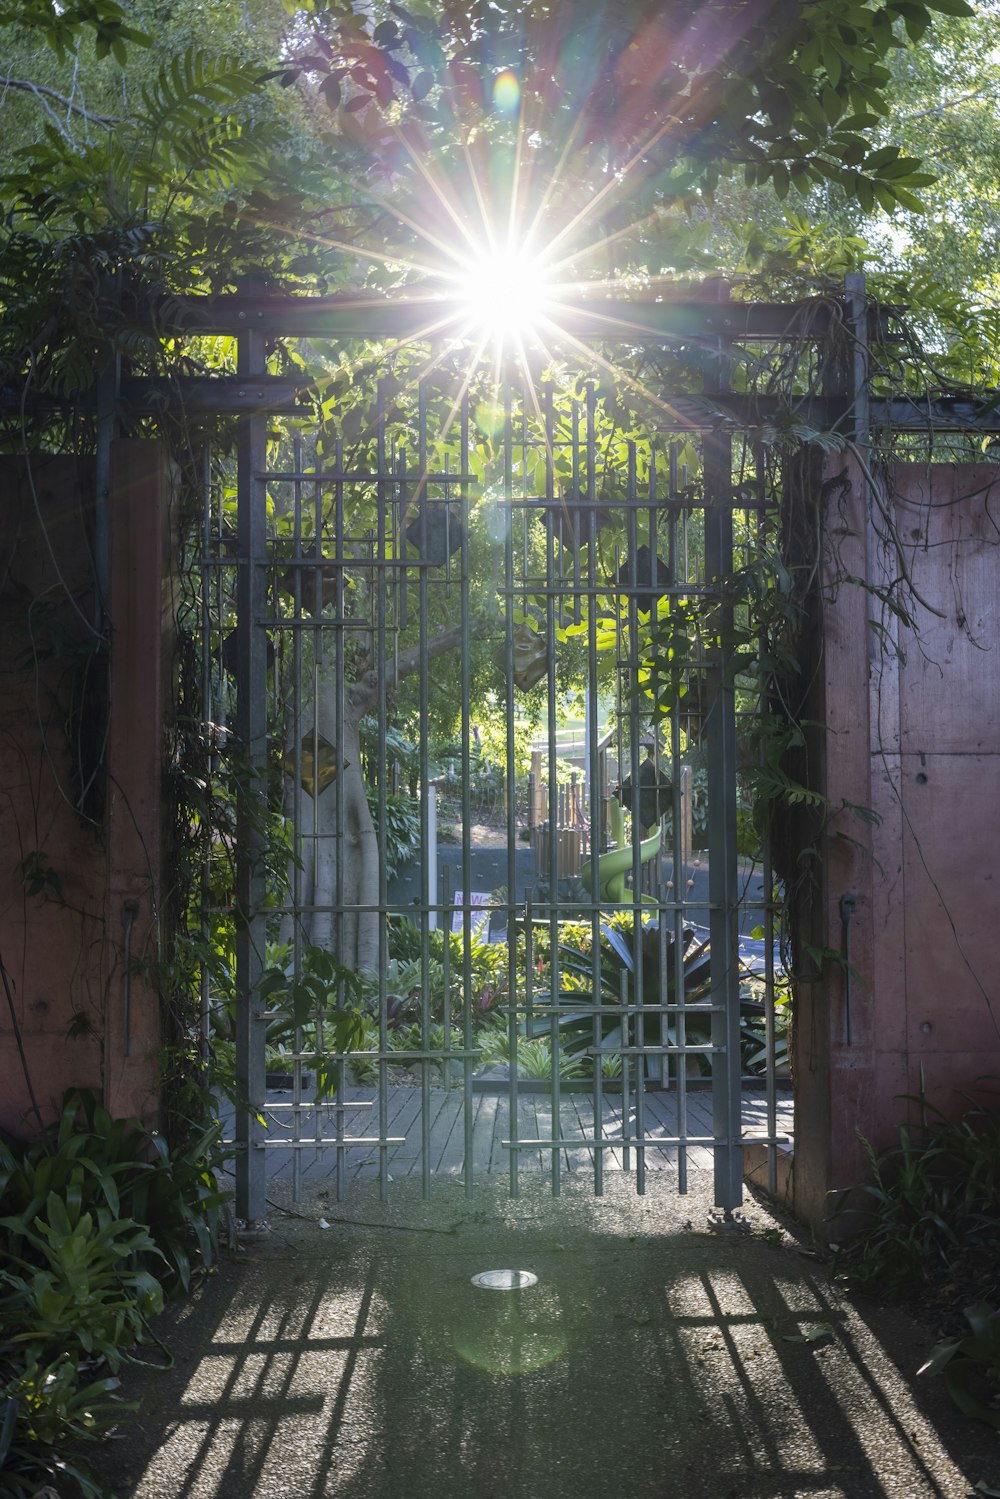 die Sonne, die durch ein Tor in einem Garten scheint